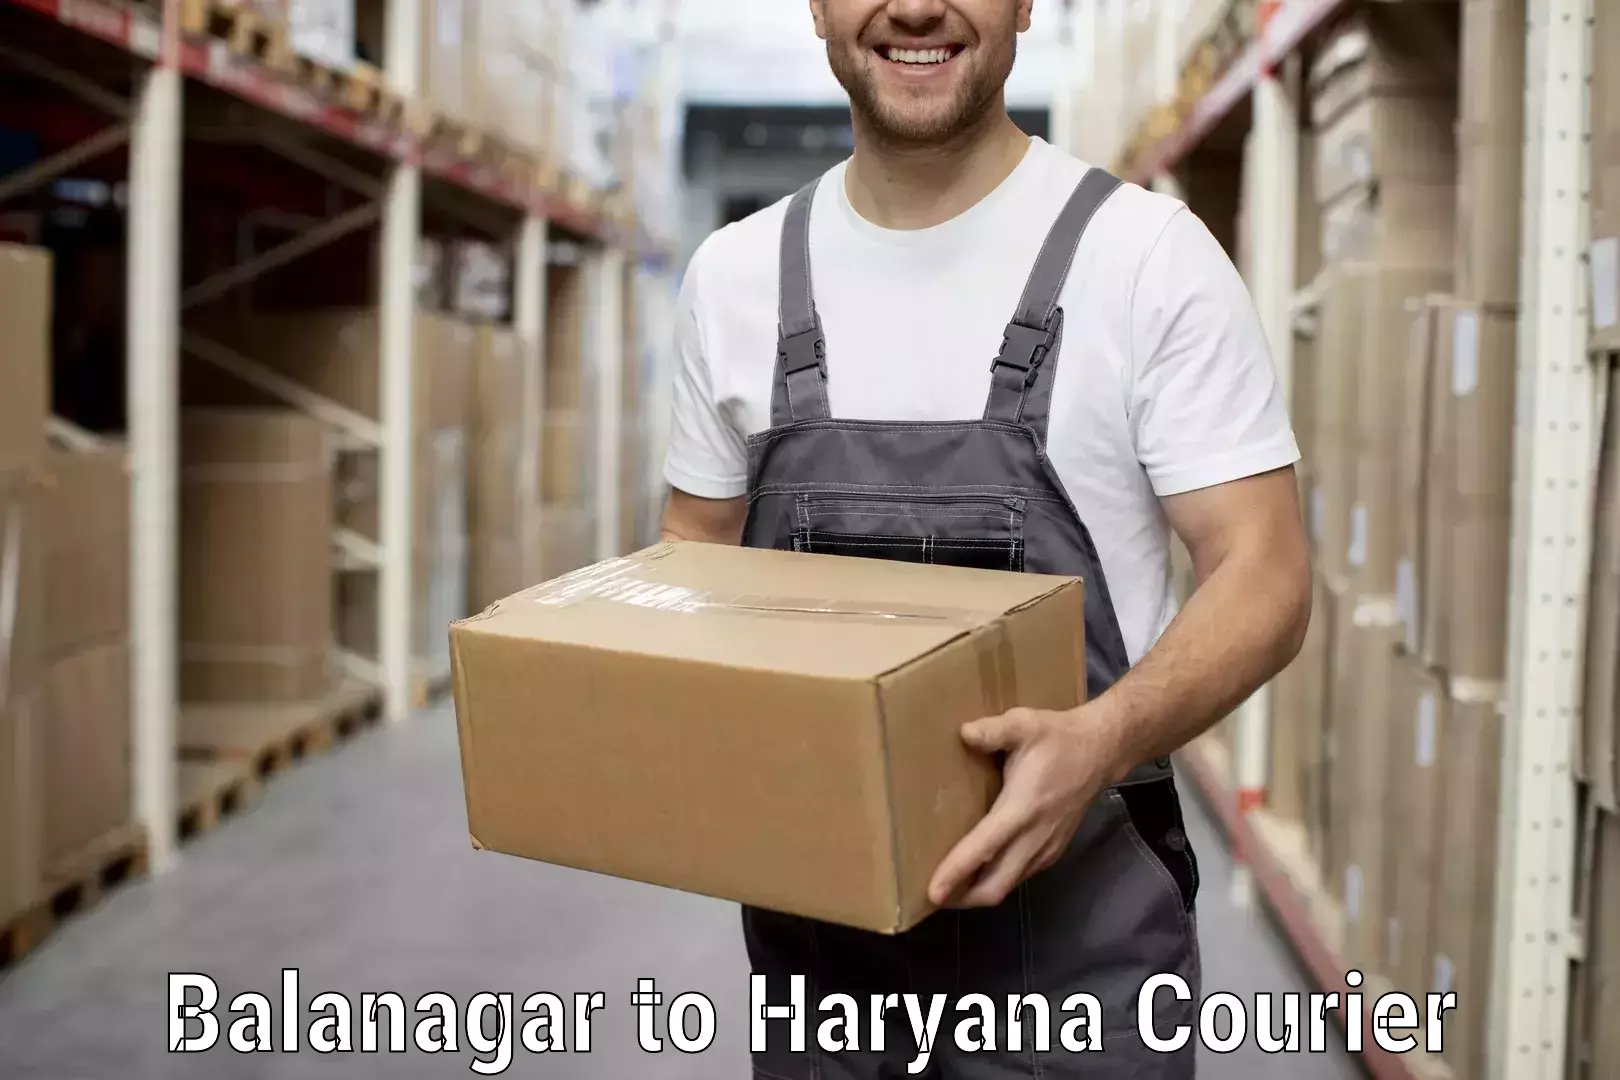 Quality moving company Balanagar to Narwana